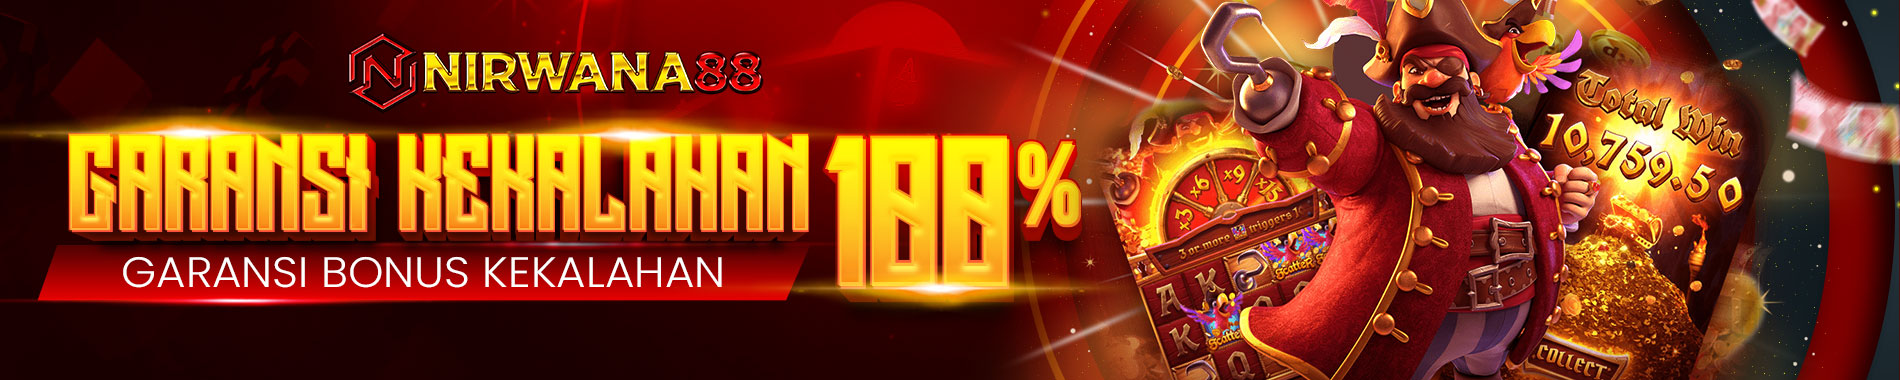 Nirwana88 | Bonus Garansi Kekalahan 100%